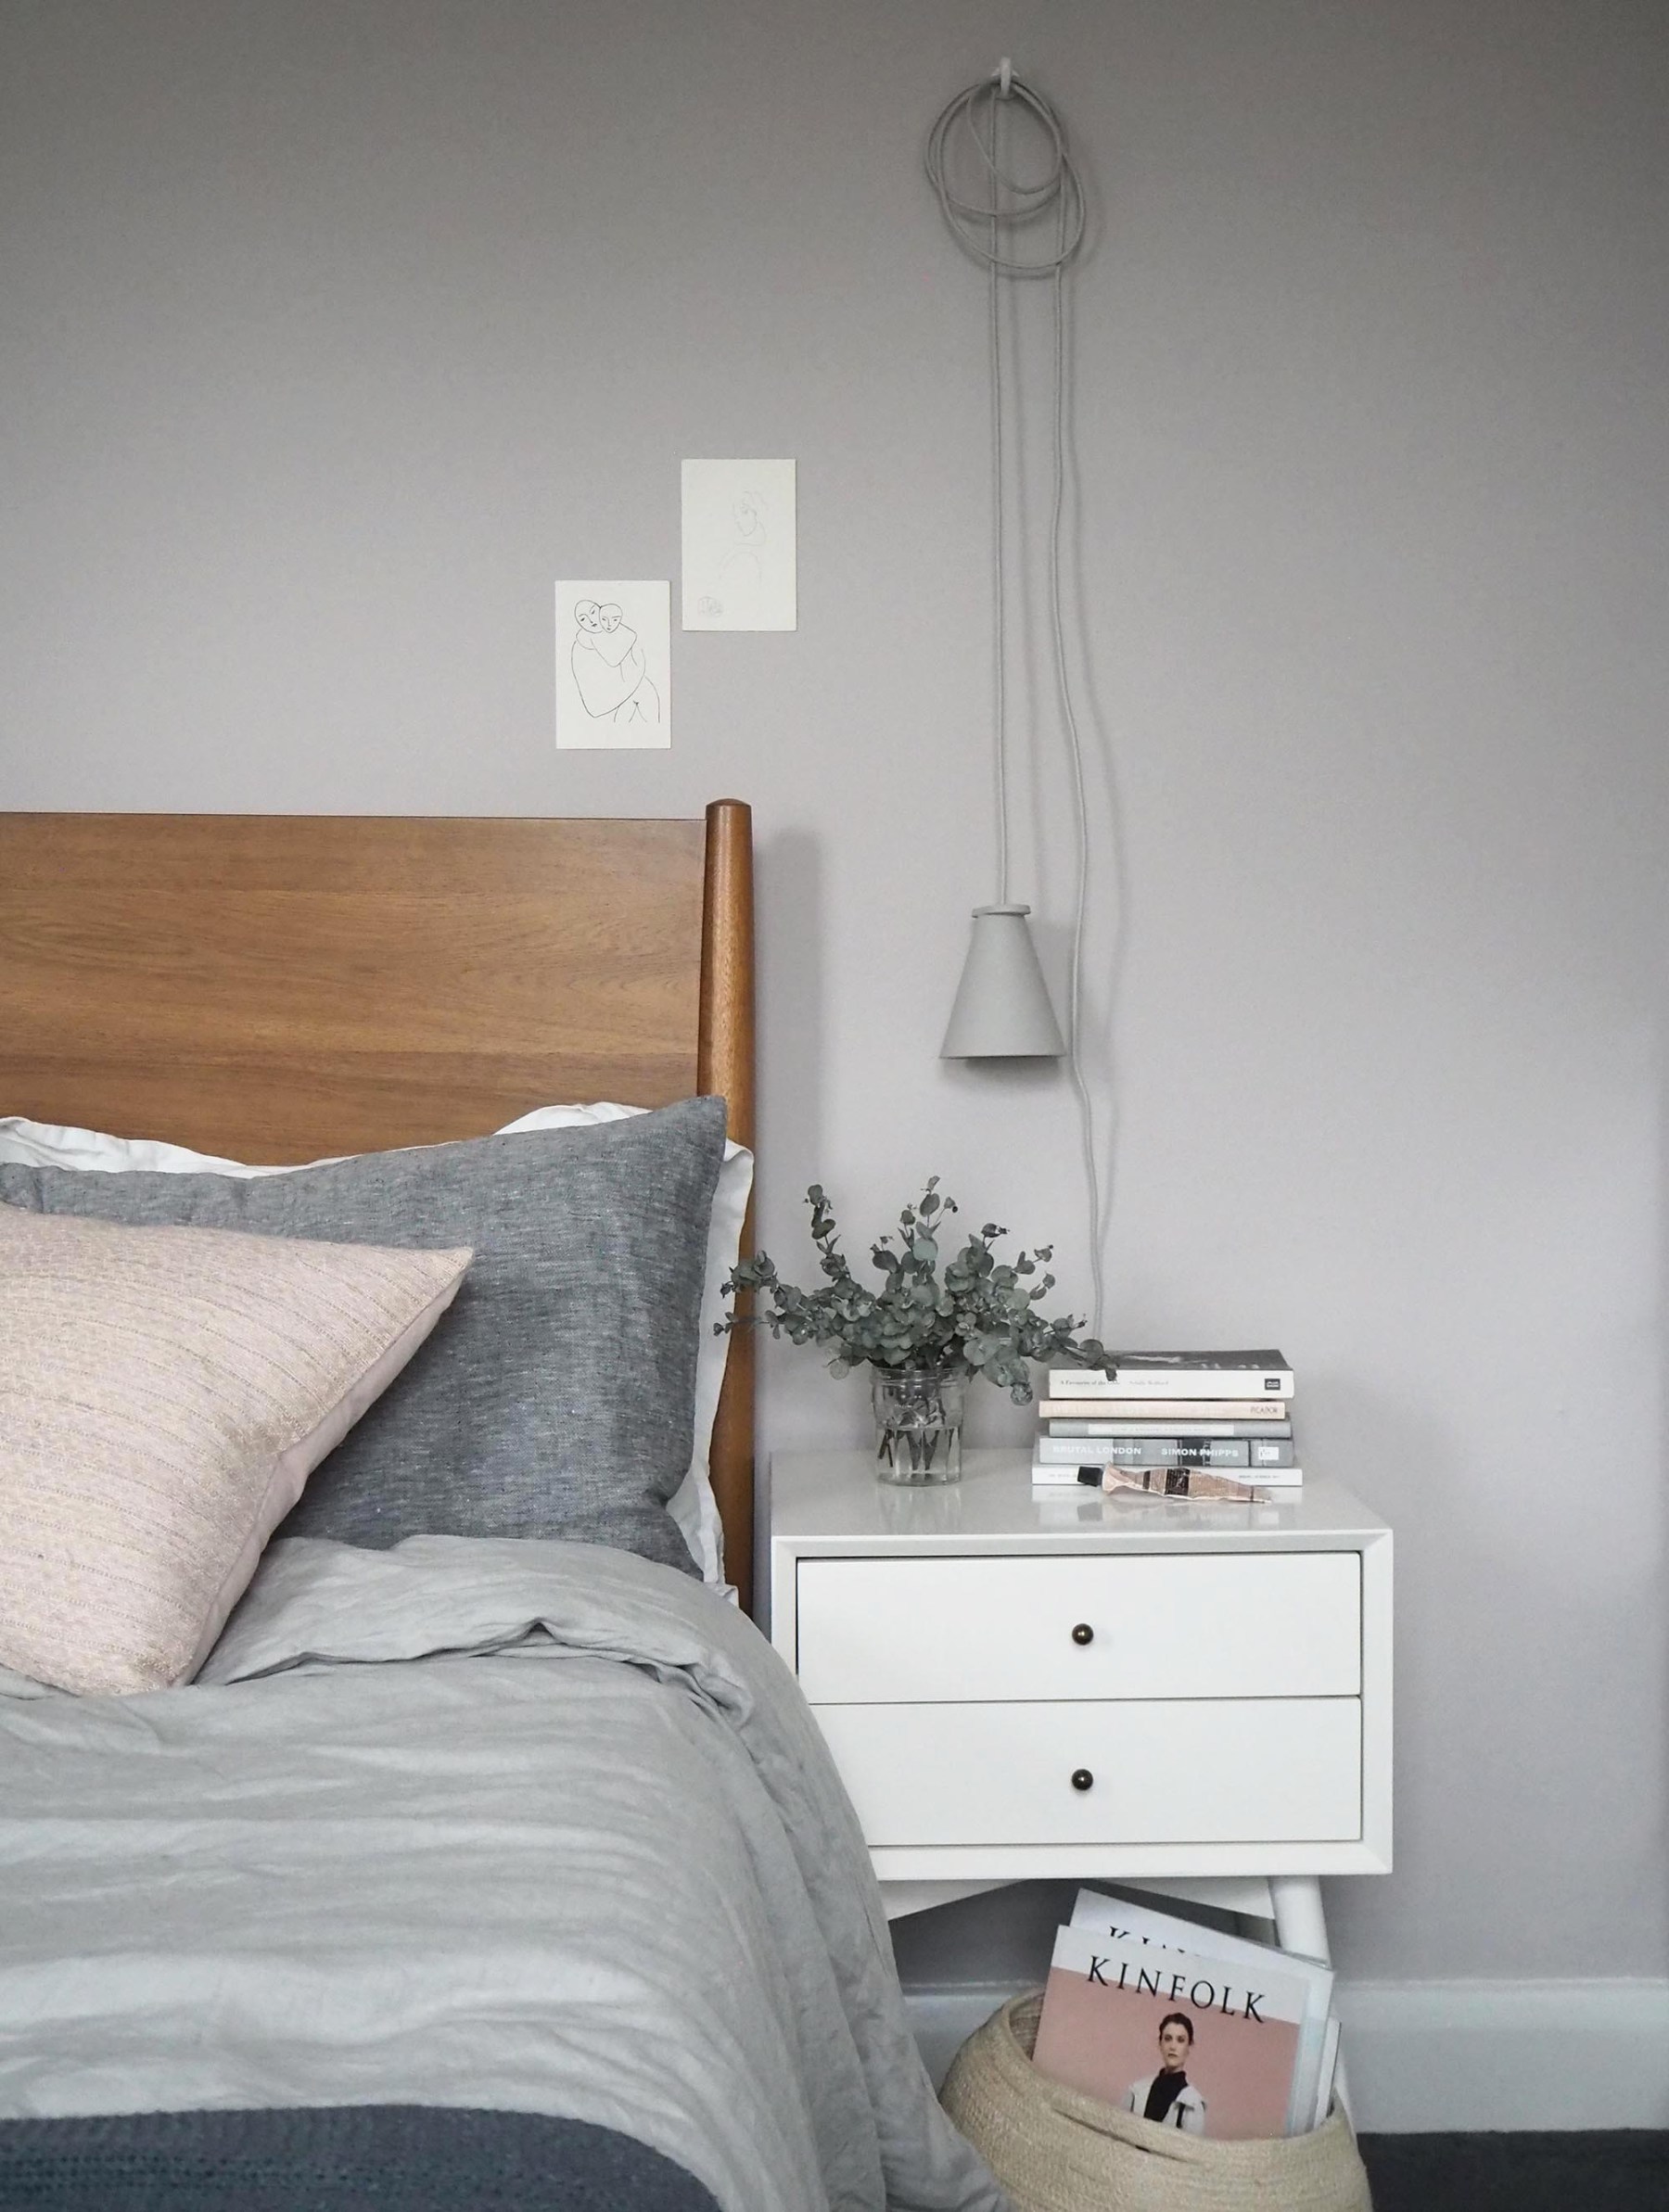 Cặp đèn ngủ treo đối xứng trên tường với màu xám nhạt vừa tinh tế vừa hiện đại.